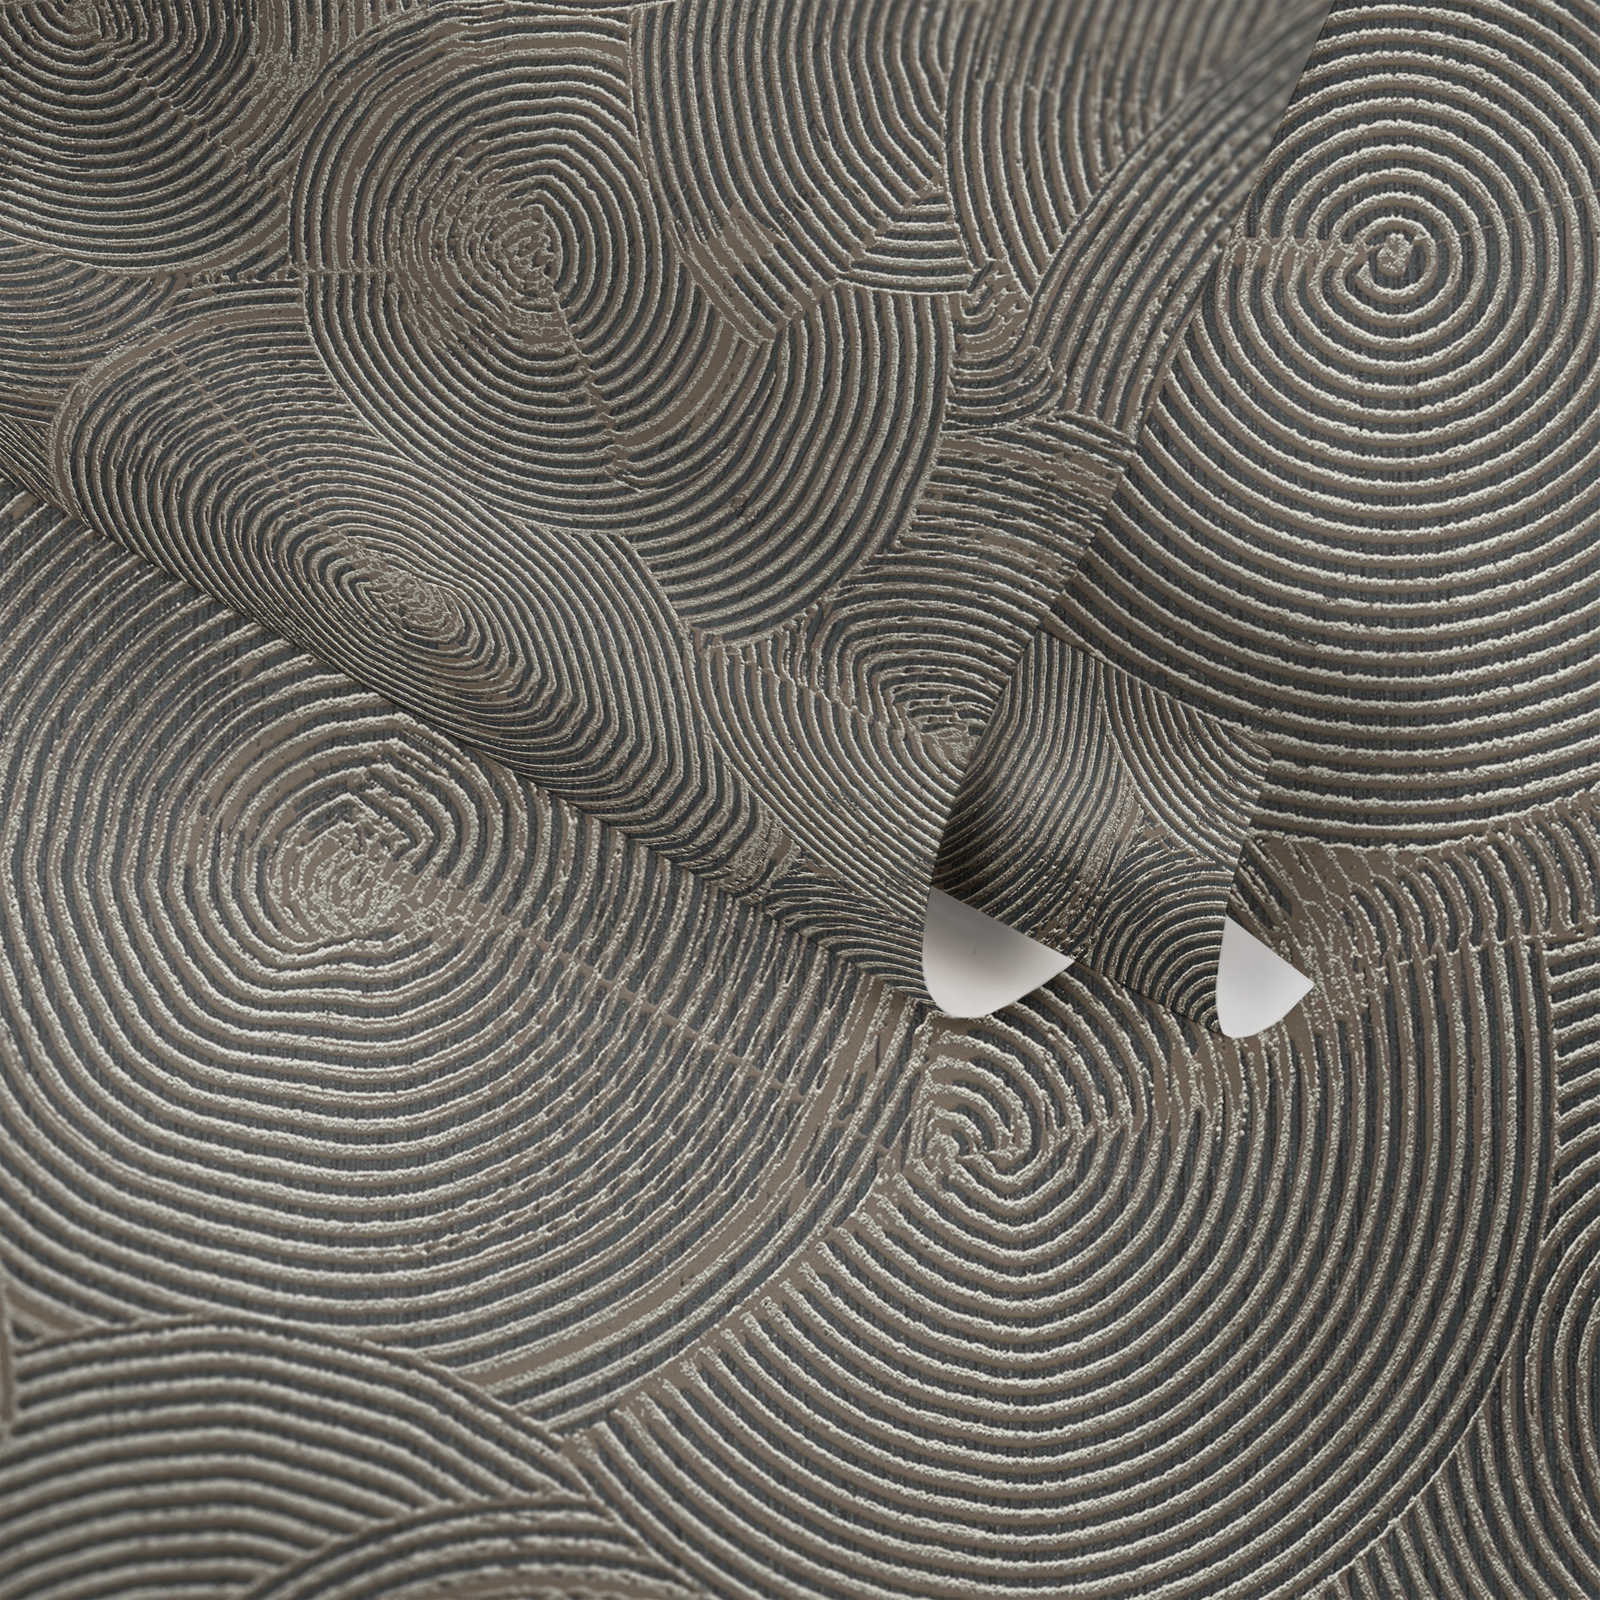             papel pintado de aspecto moderno de yeso con efecto metálico - marrón, metálico, negro
        